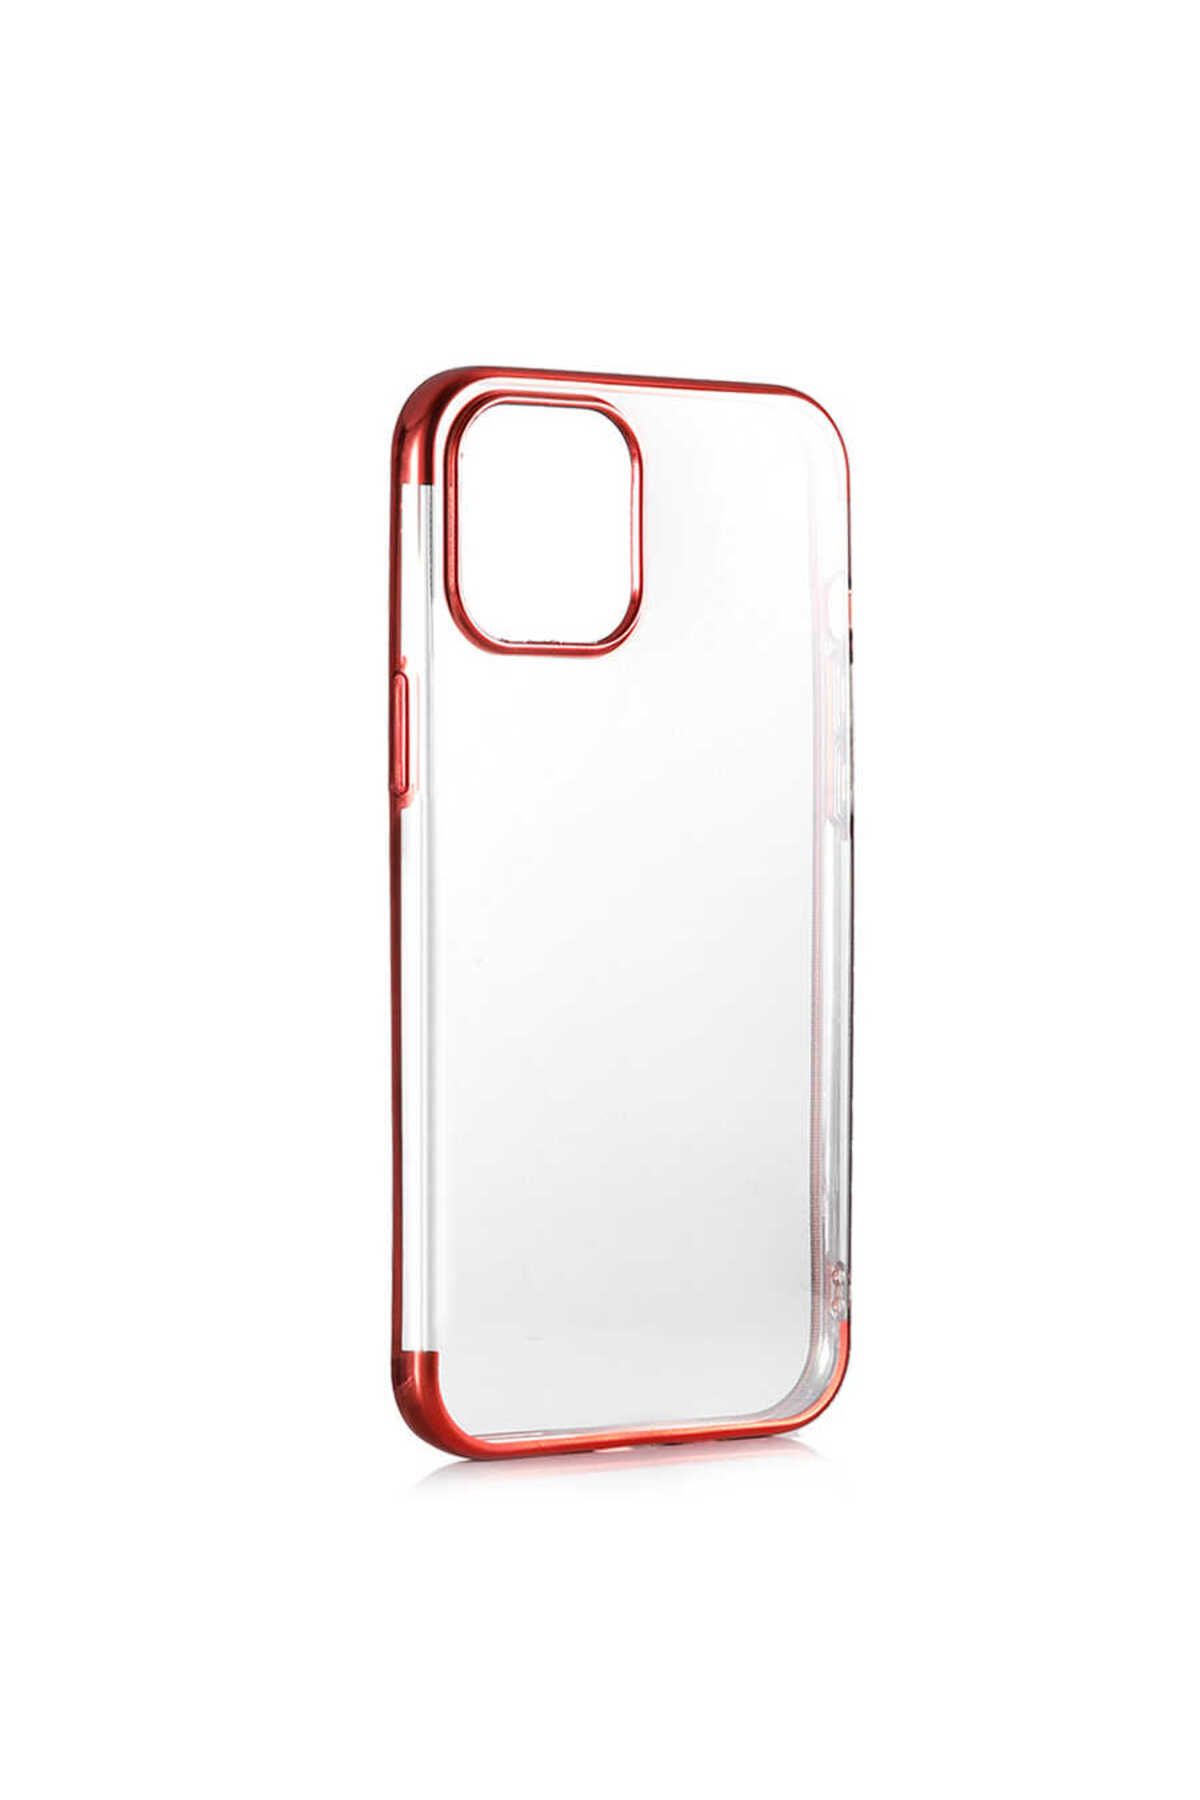 Bilişim Aksesuar iPhone 12 Mini Uyumlu Zore Dört Köşeli Lazer Silikon Kılıf-Kırmızı